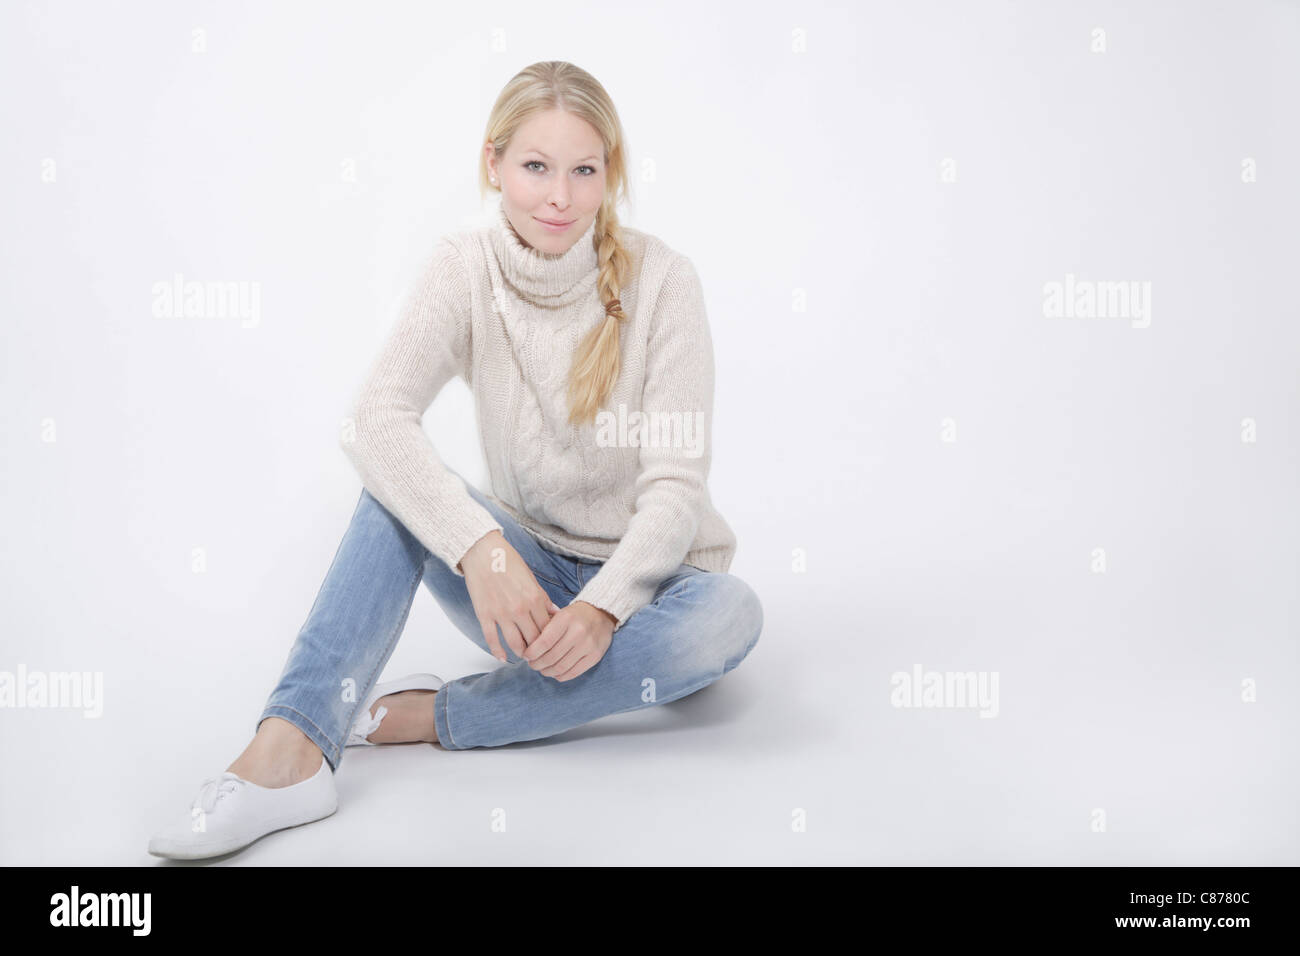 Junge Frau tragen Tutleneck Jumper sitzt auf weißem Hintergrund, Lächeln, Porträt Stockfoto